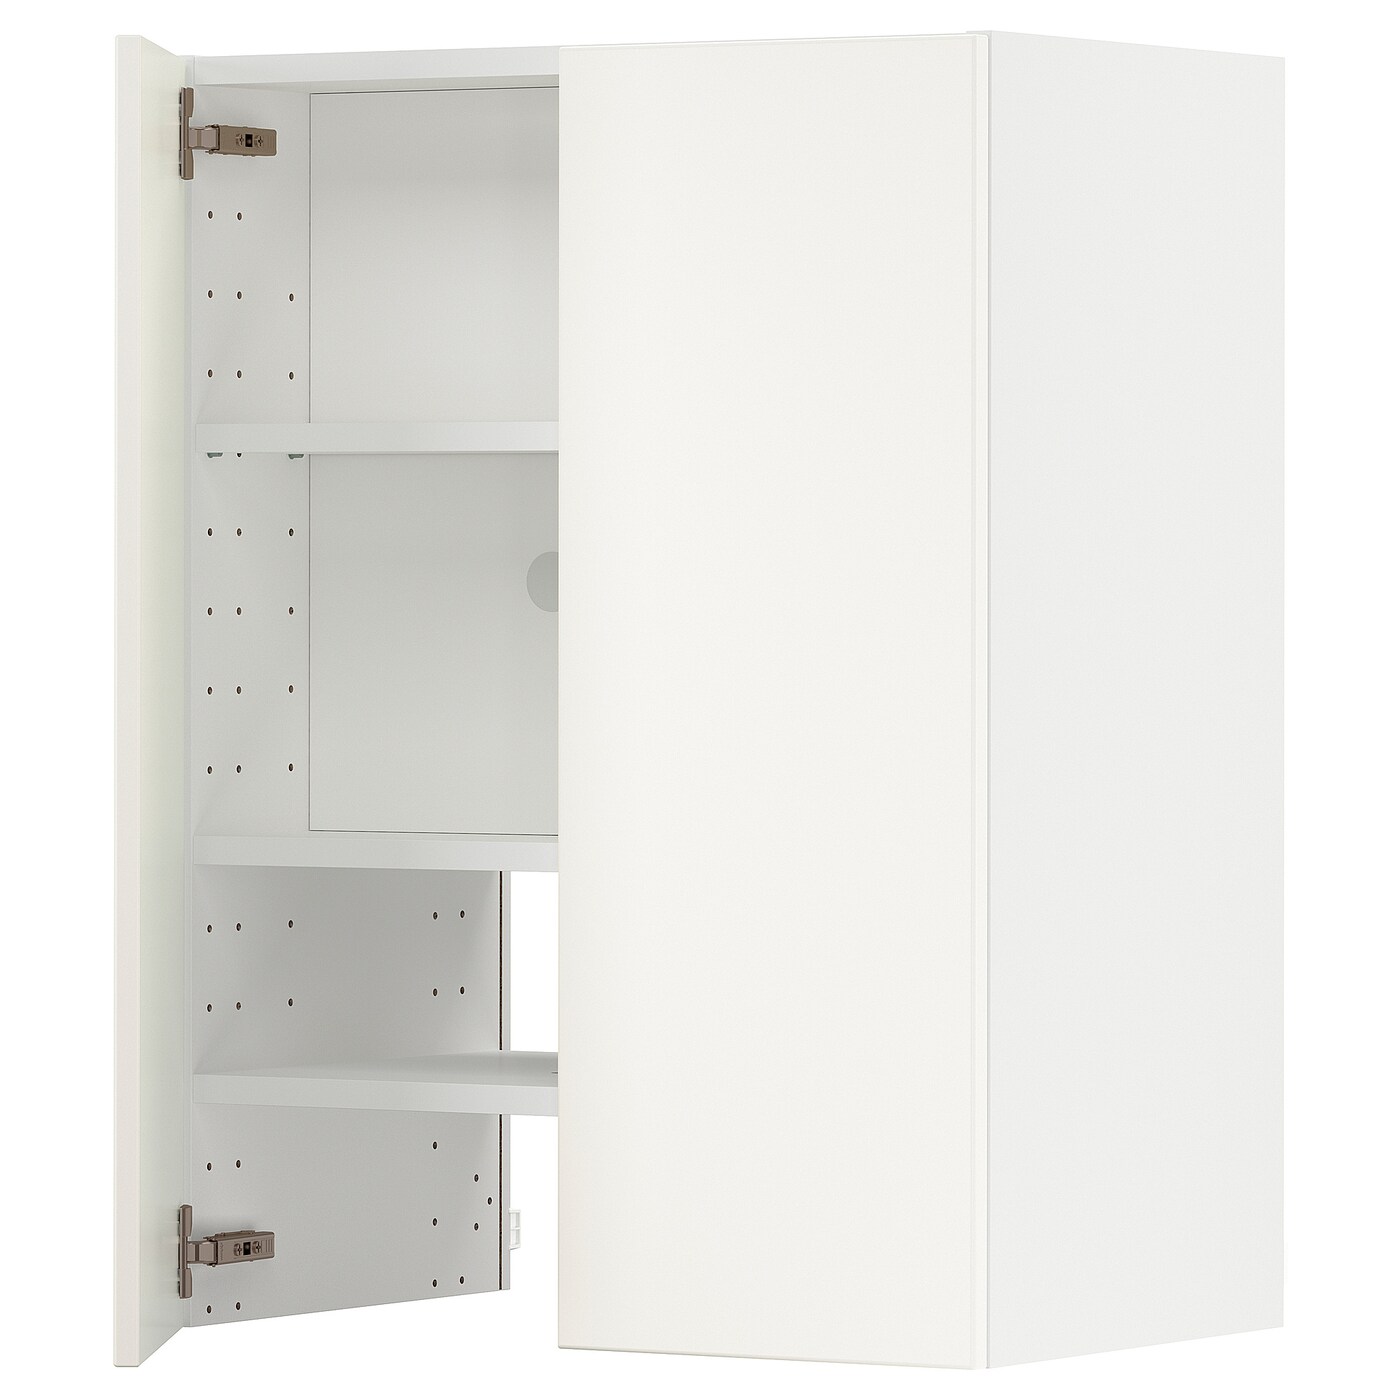 Навесной шкаф с полкой - METOD IKEA/ МЕТОД ИКЕА, 60х80 см, белый/темно-зеленый